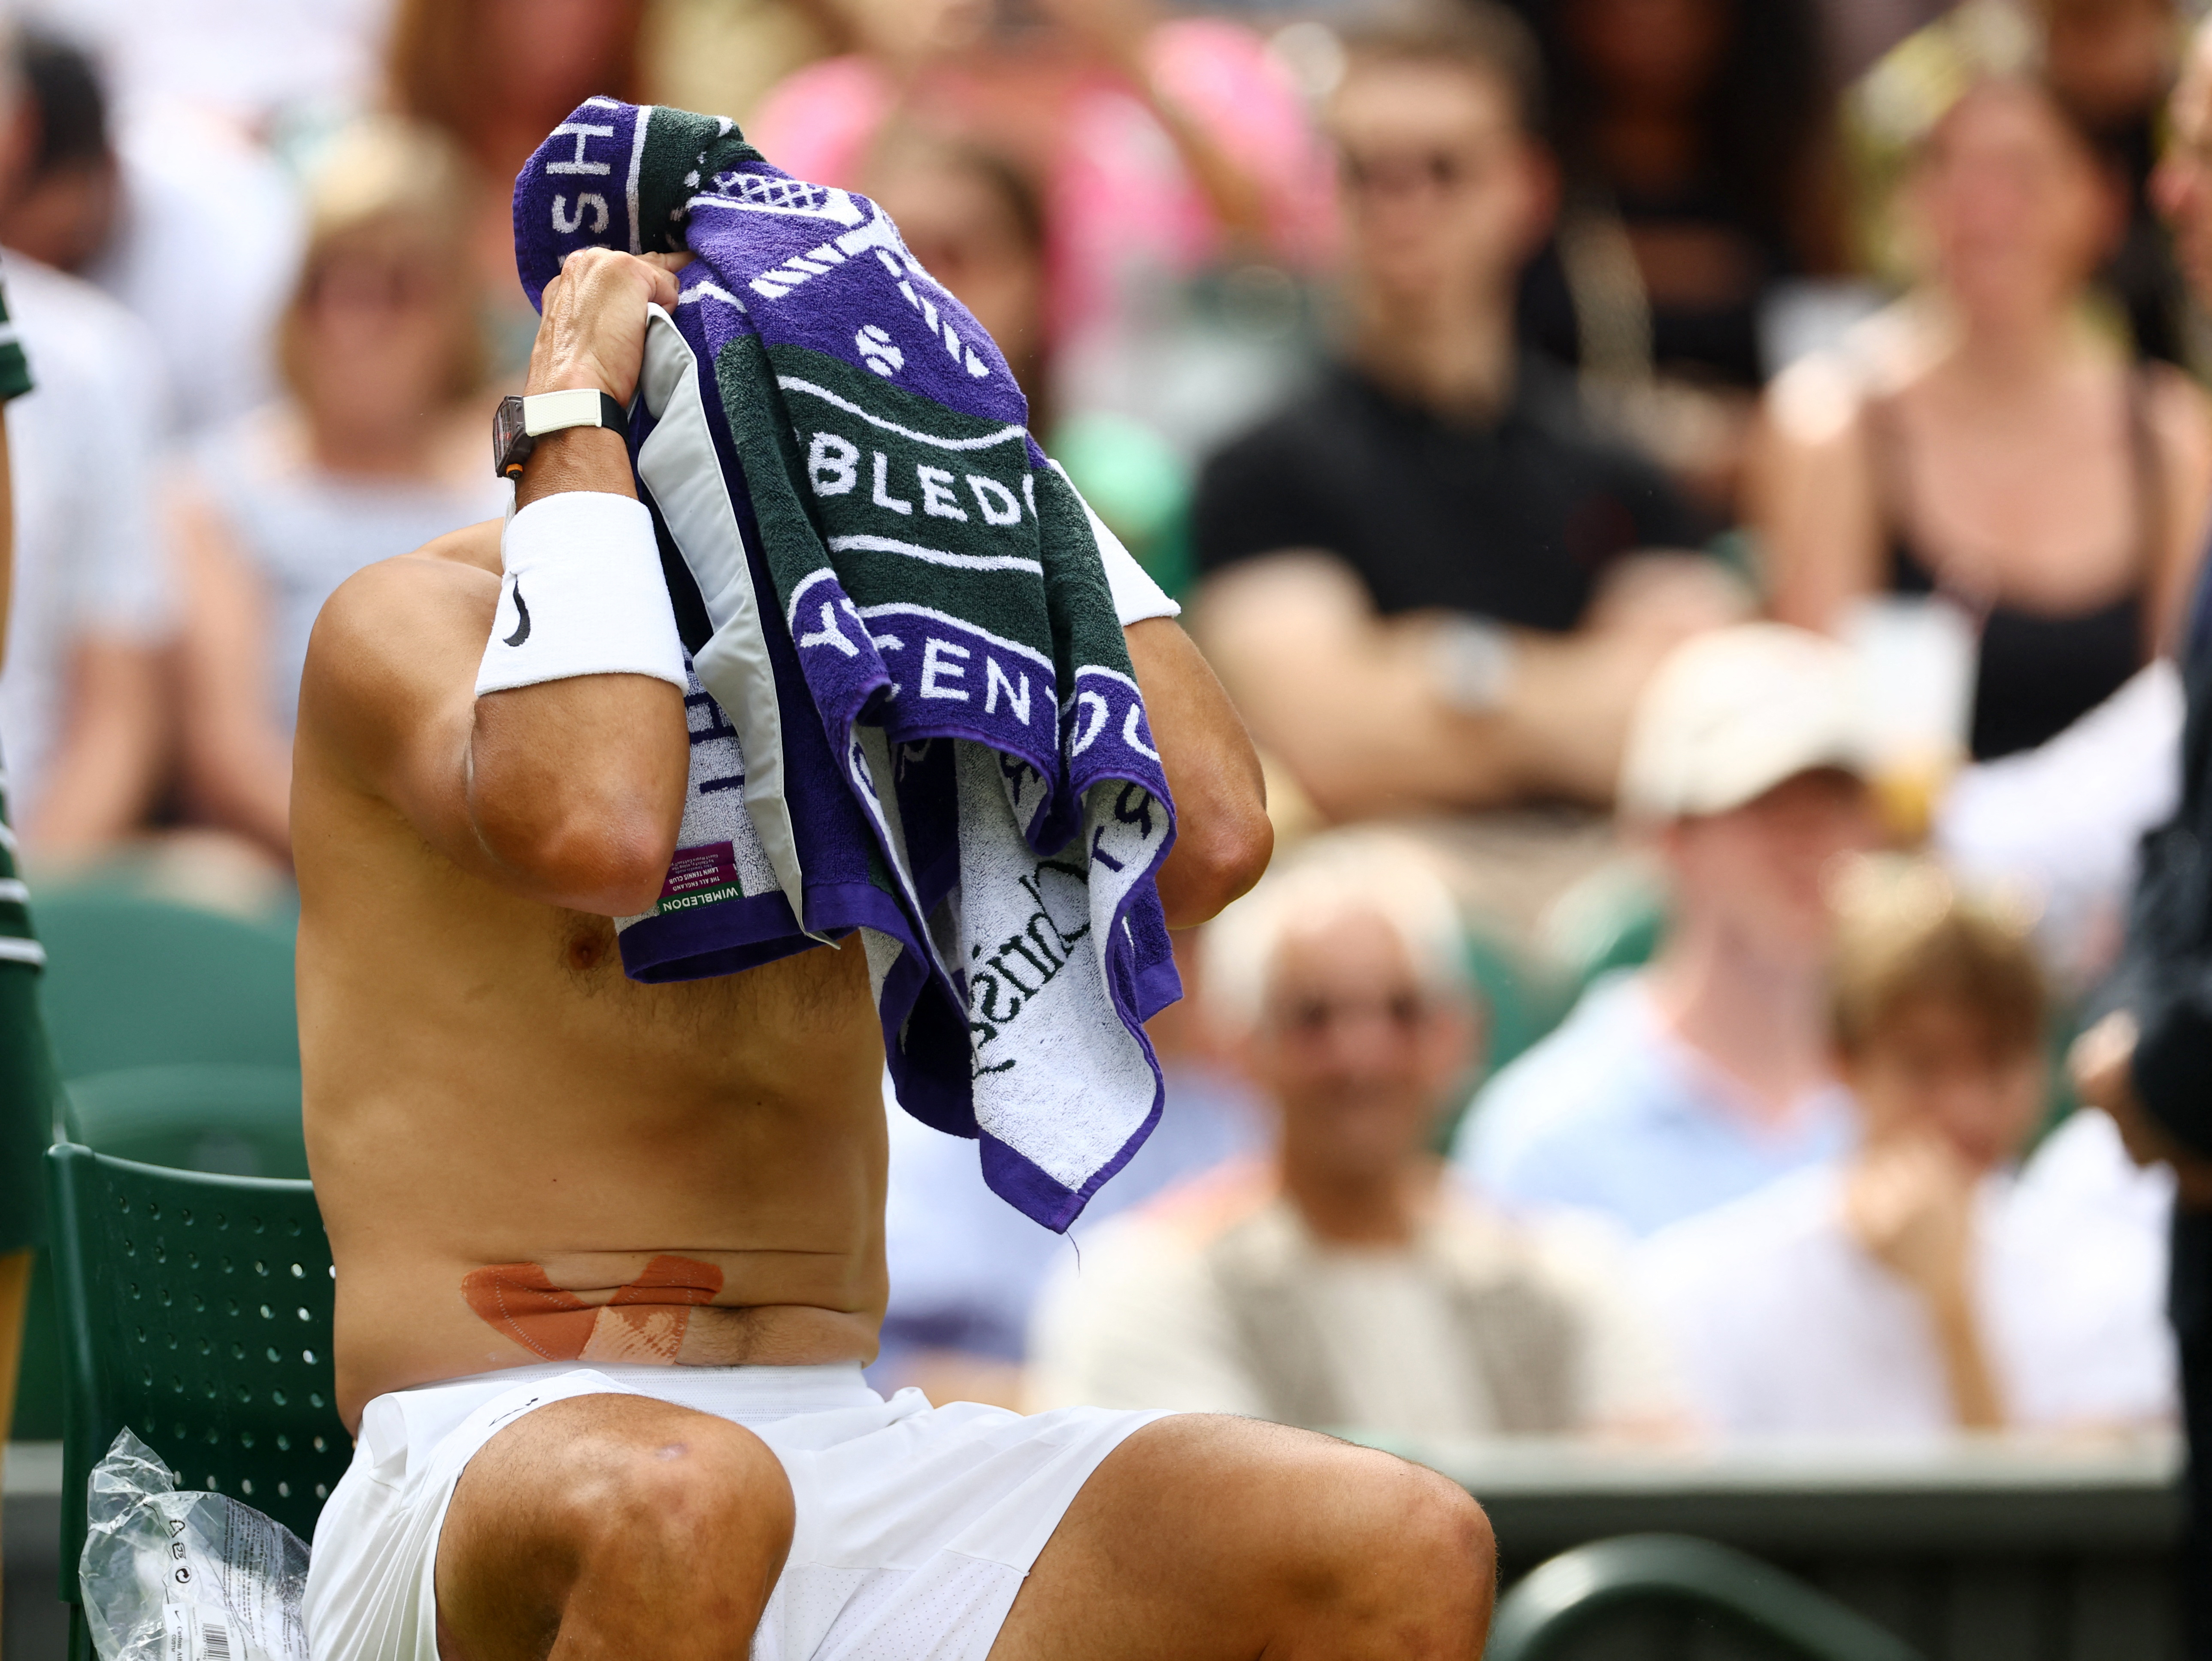 Nadal jugó casi todo el partido con unas vendas médicas en la zona de la lesión (Foto: Reuters)